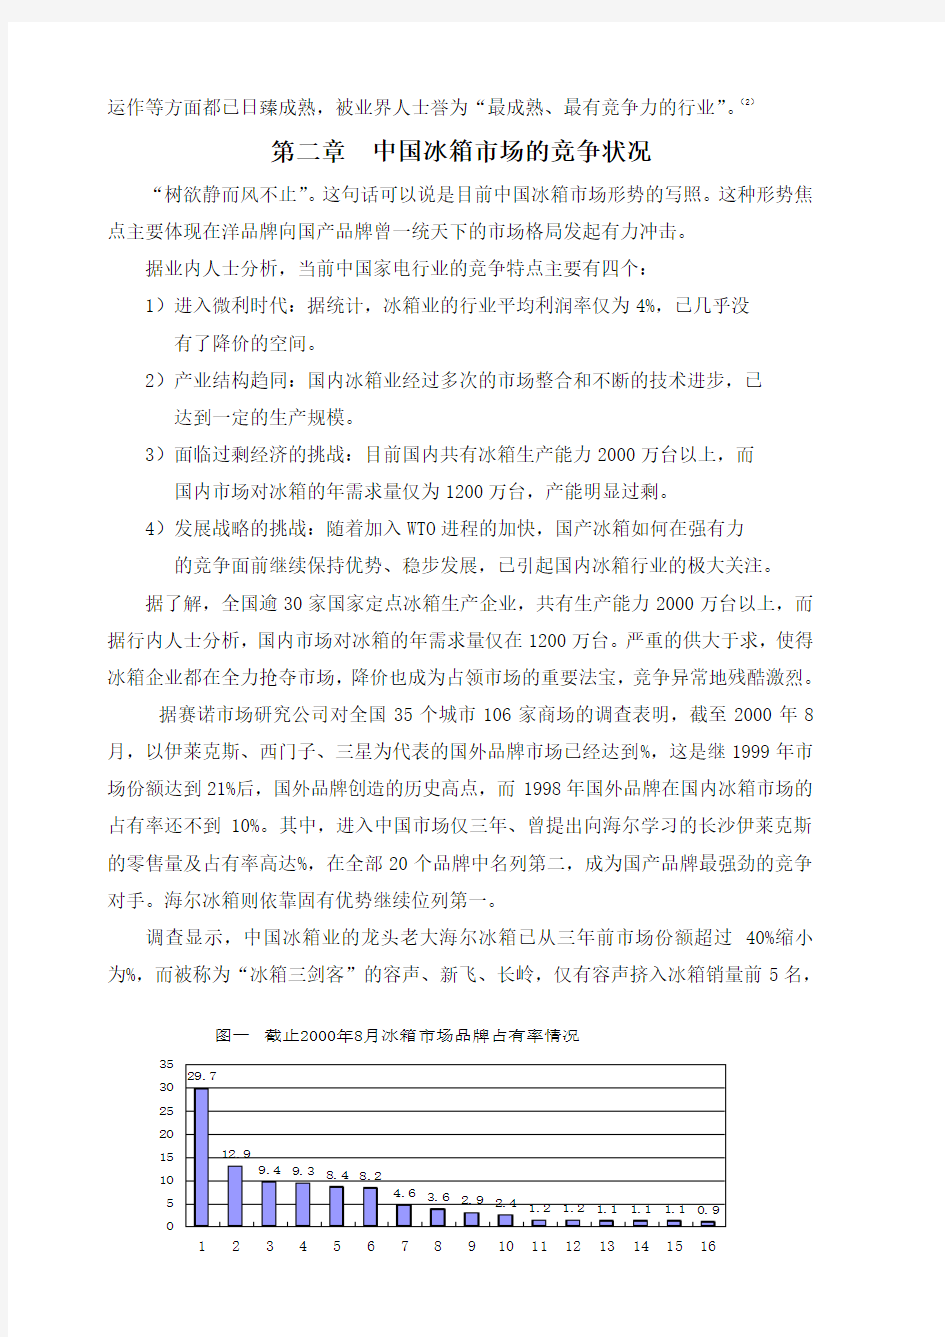 中国冰箱行业营销分析报告(第四组)